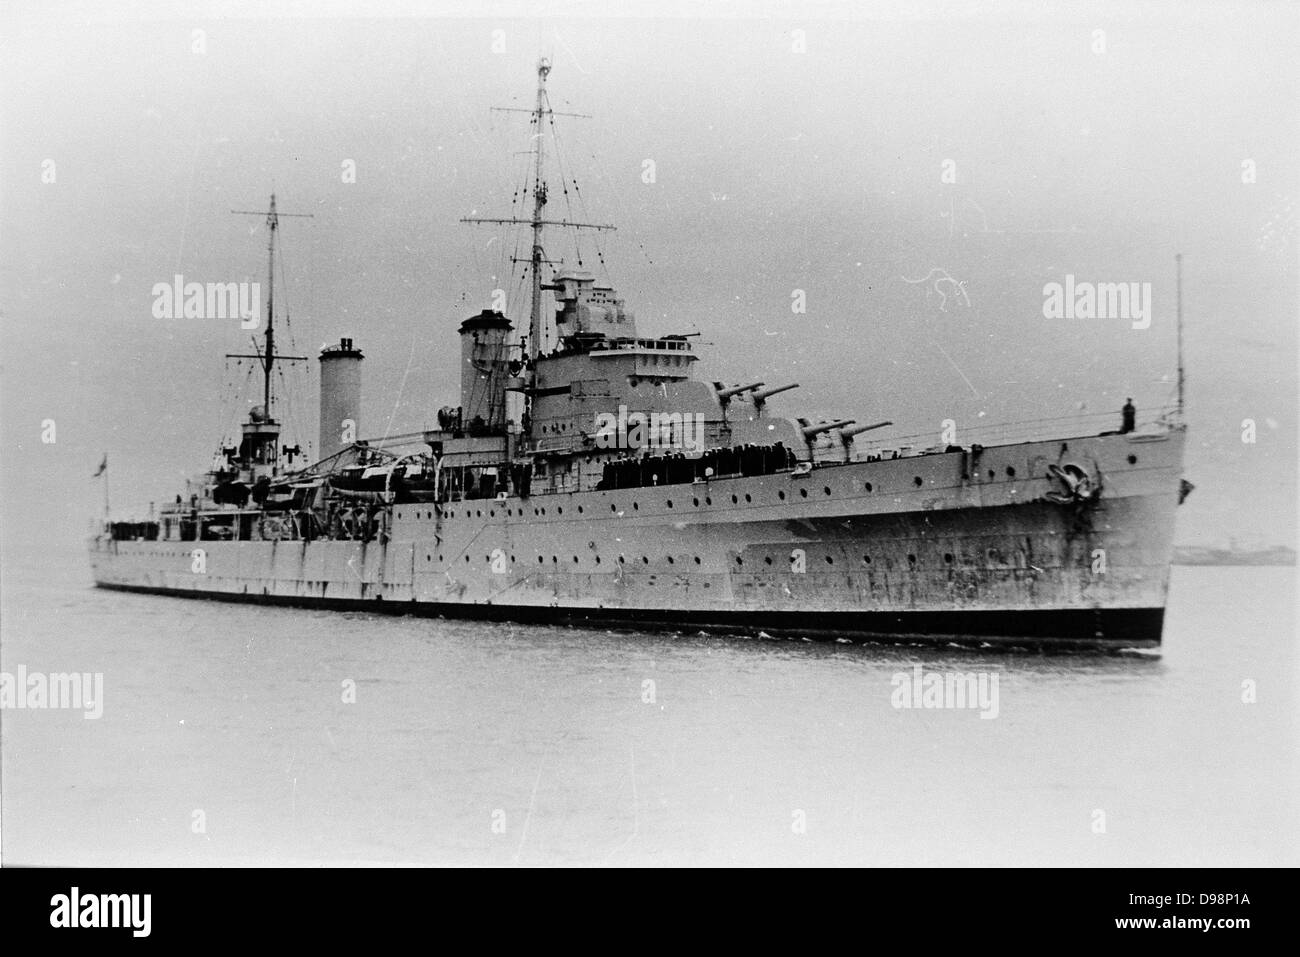 HMAS Sydney llegar en Sydney, Australia, 1936, modificado Leander clase cruiser de luz. En la Segunda Guerra Mundial el 19 de noviembre de 1941 ella participó con el crucero alemán Kormoran y se perdió con 645 personas a bordo. Australia marina Foto de stock